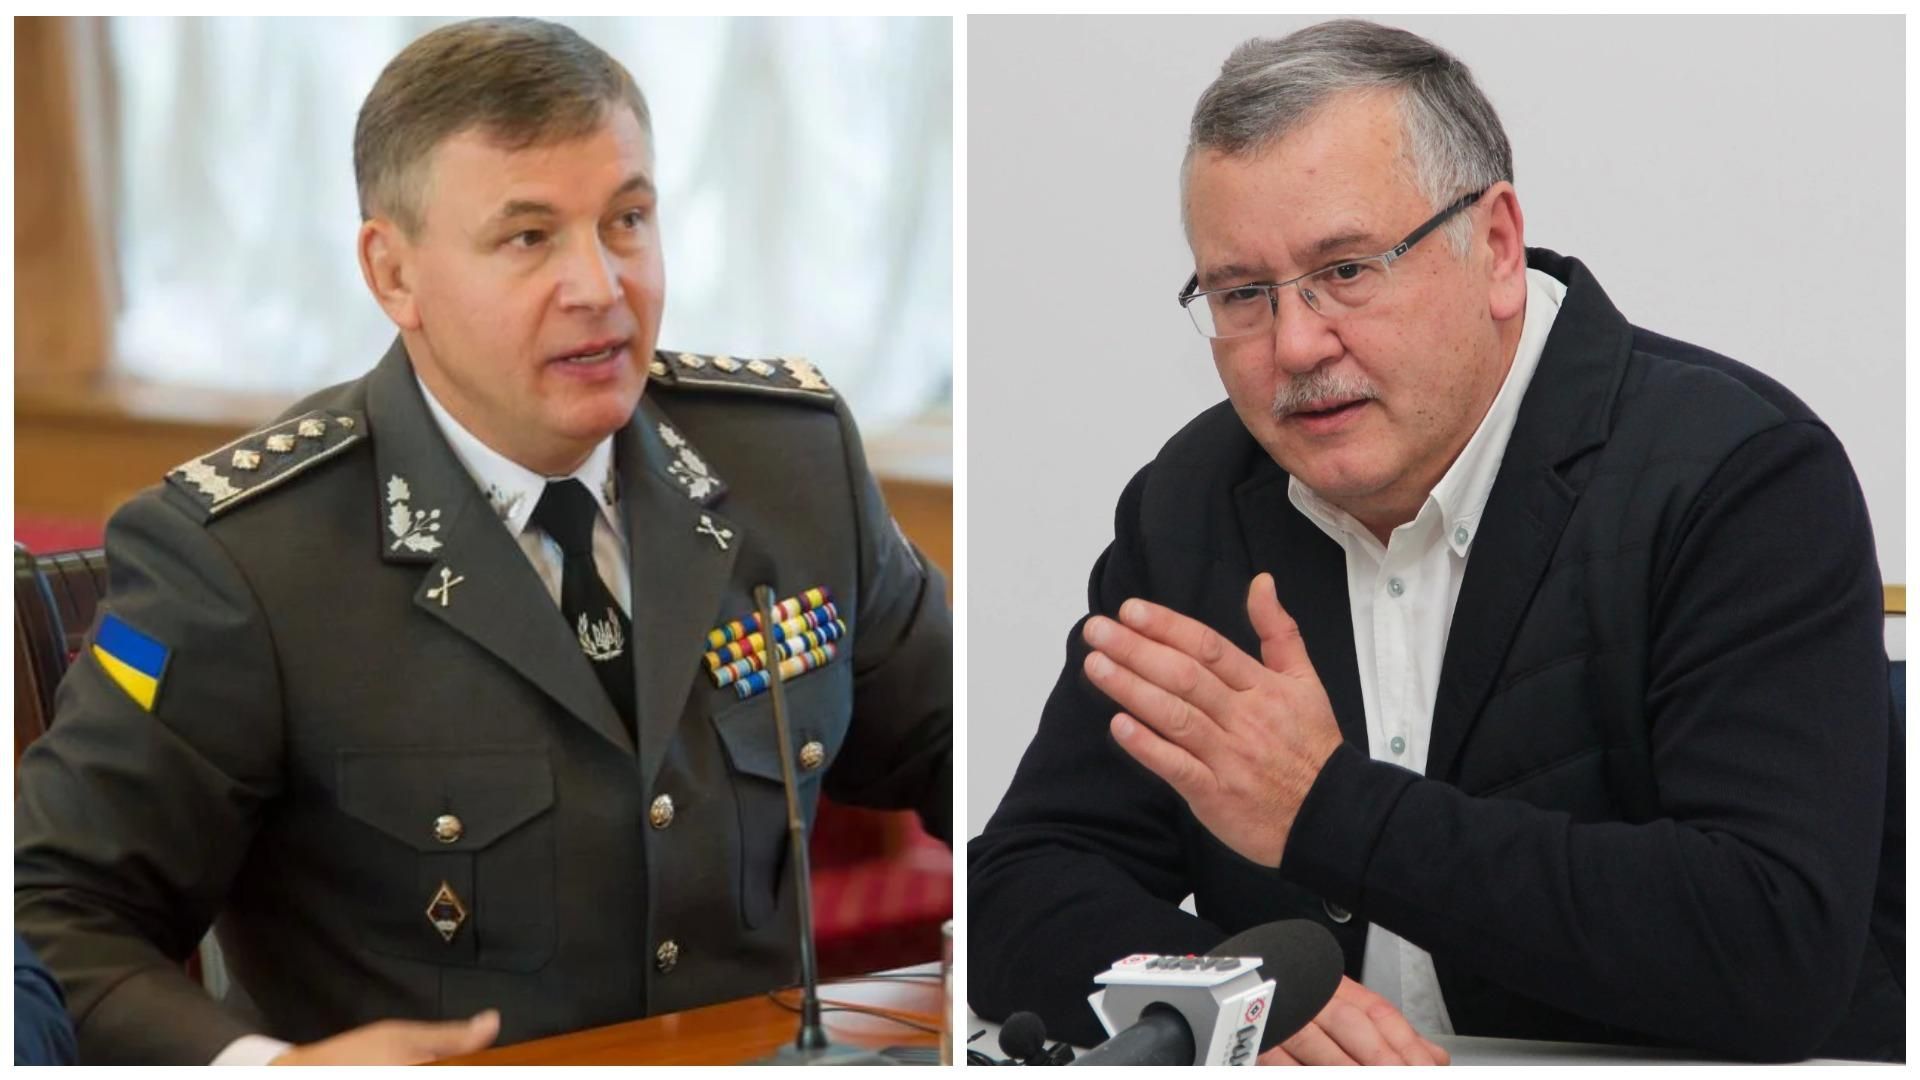 Вслед за Луценко во лжи Гриценко обвинил Гелетей: глава УГО попросил того зайти в гости